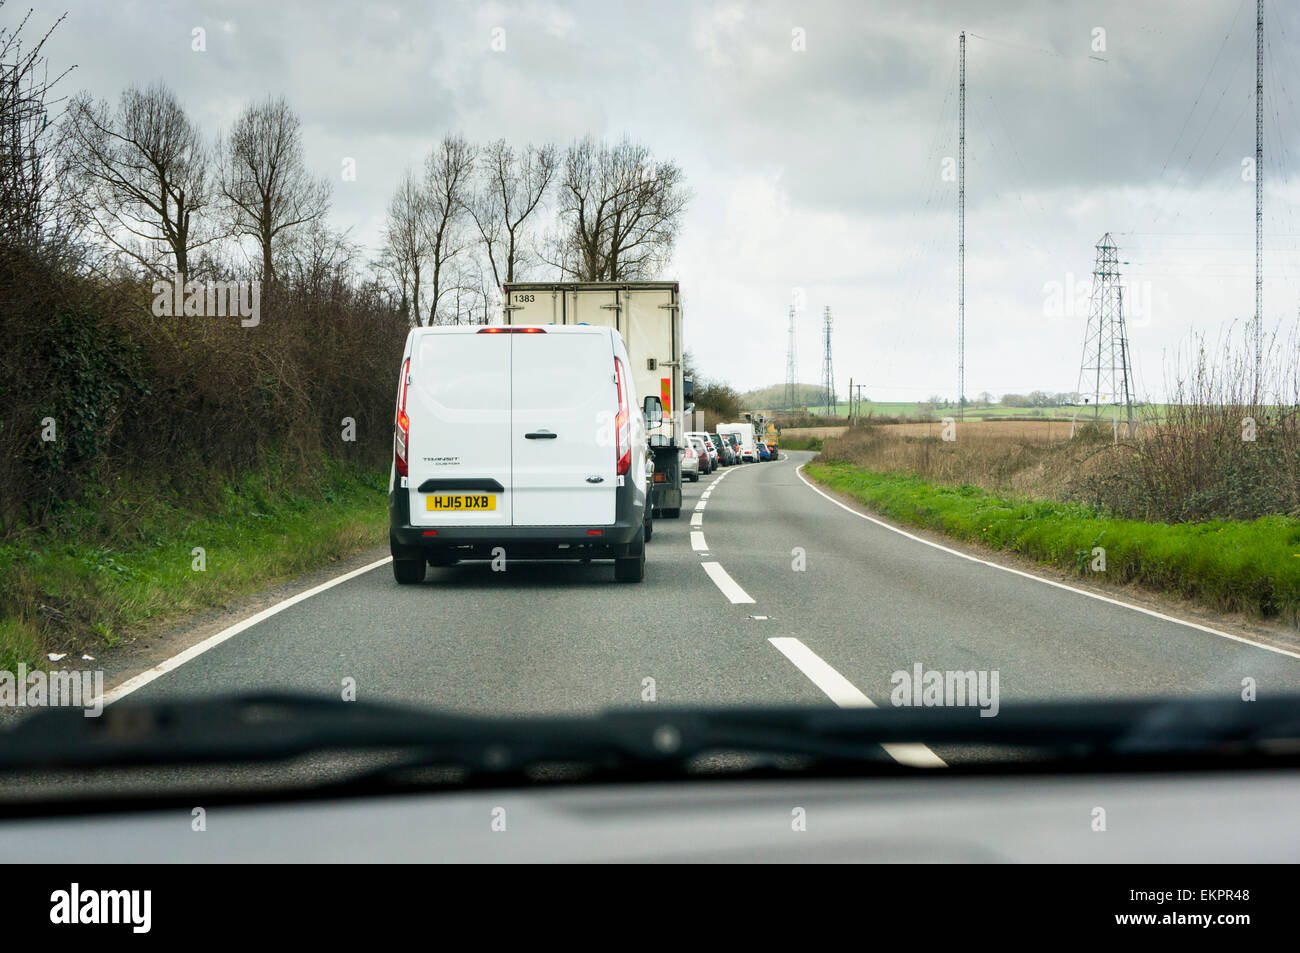 Embouteillage sur un pays rural road, England, UK Banque D'Images